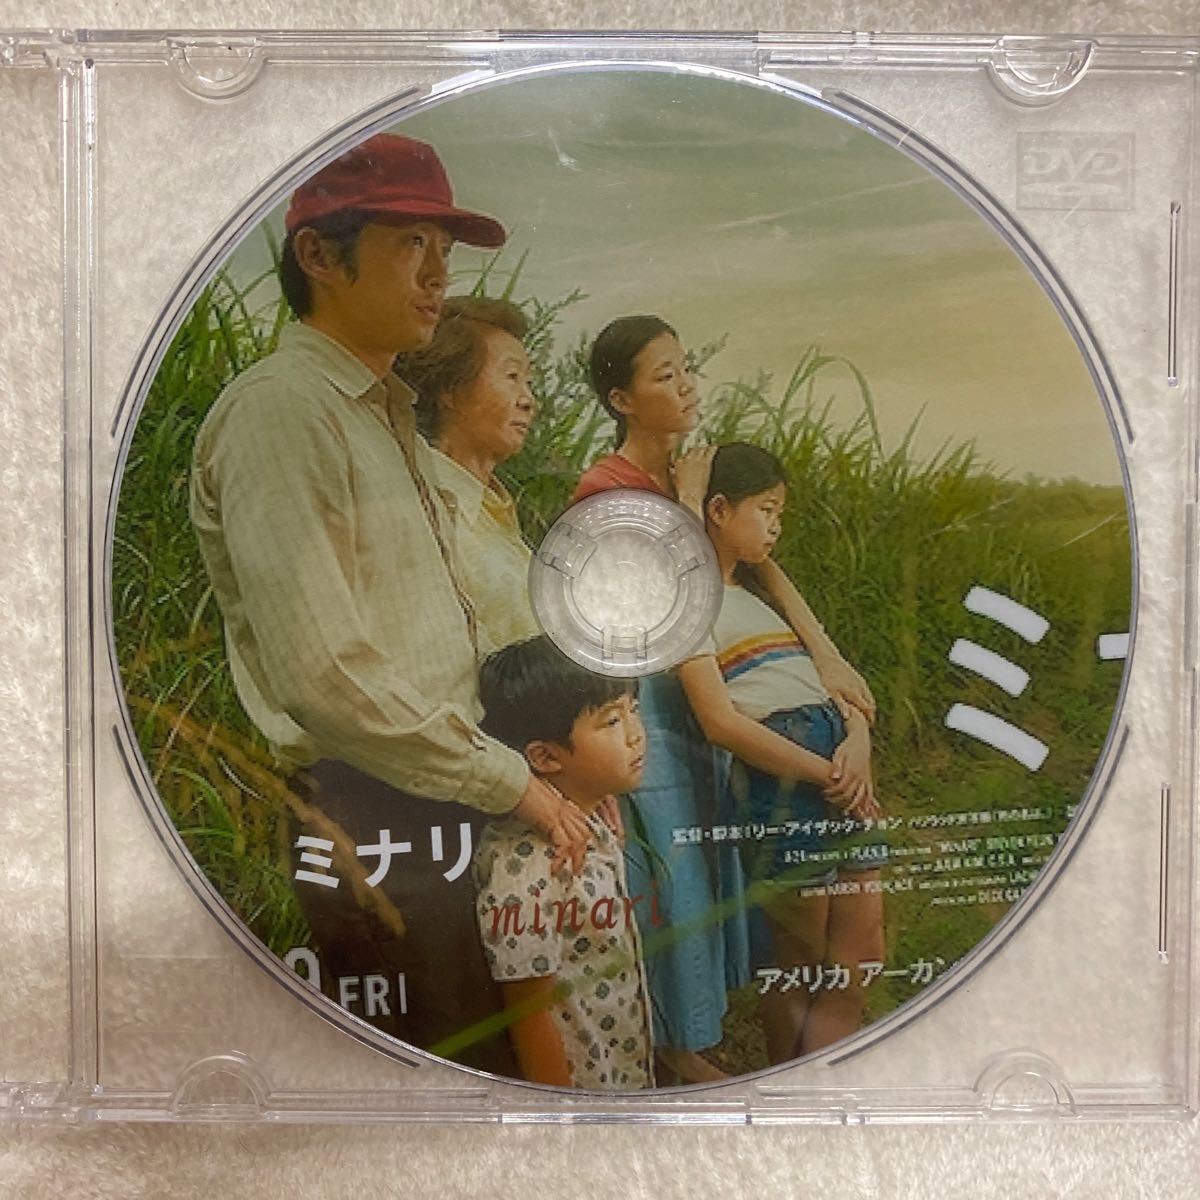 ミナリ　韓国映画DVD 日本語字幕レーベル印刷有りこちらで購入し、一度、再生しました。